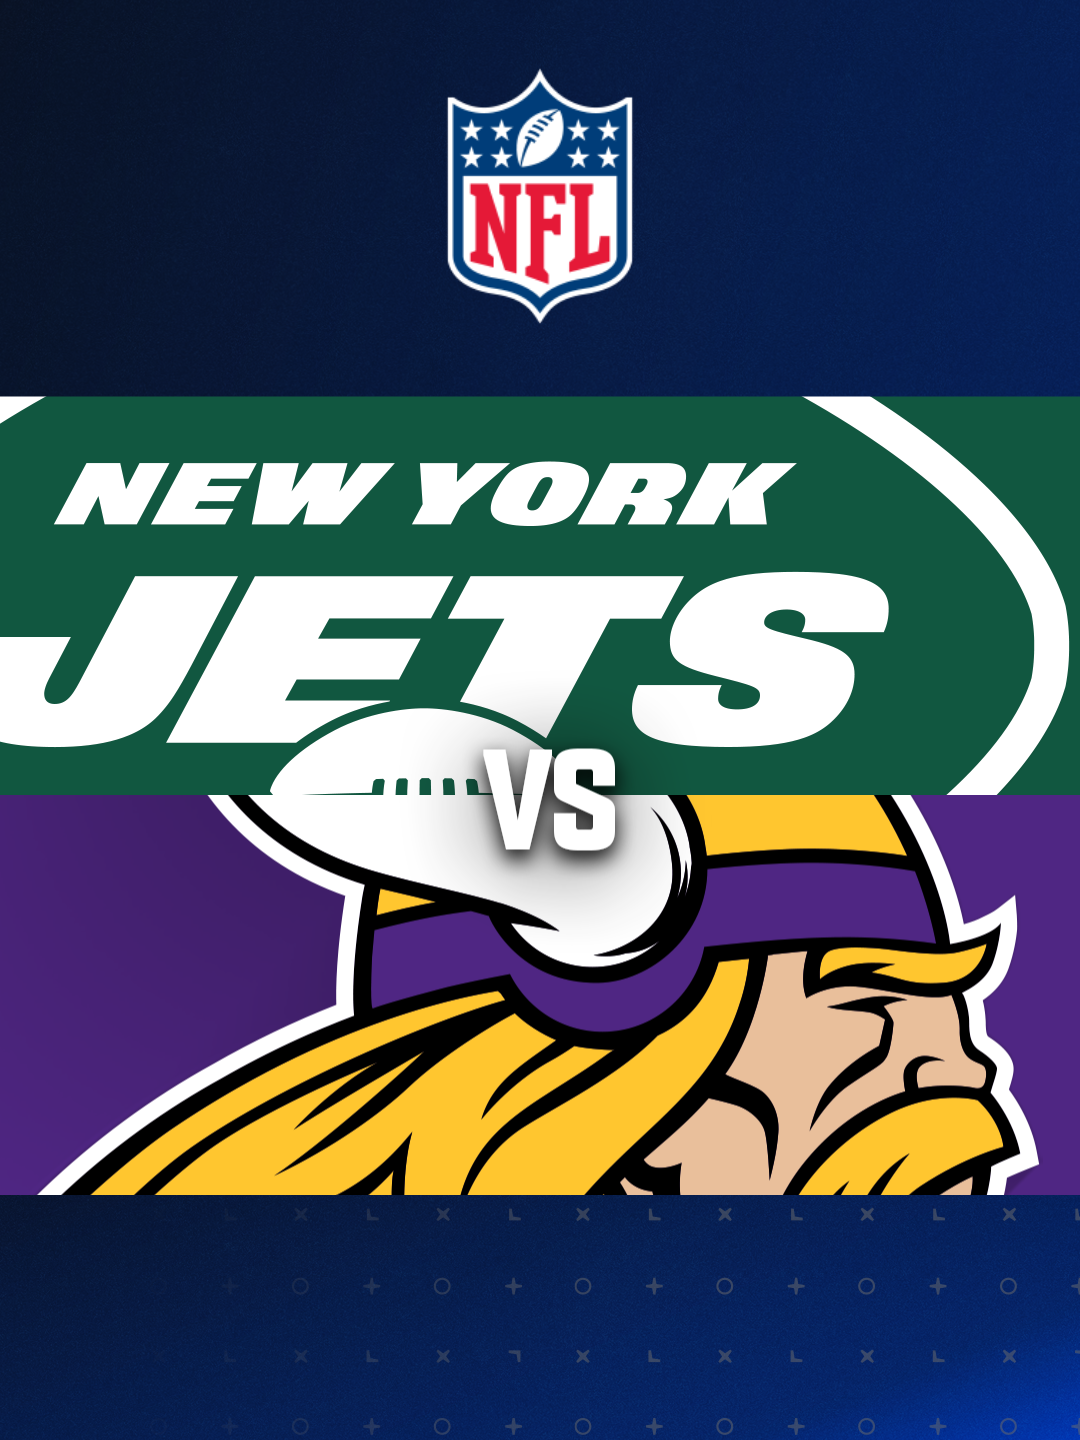 Highlights: New York Jets vs Minnesota Vikings in NFL